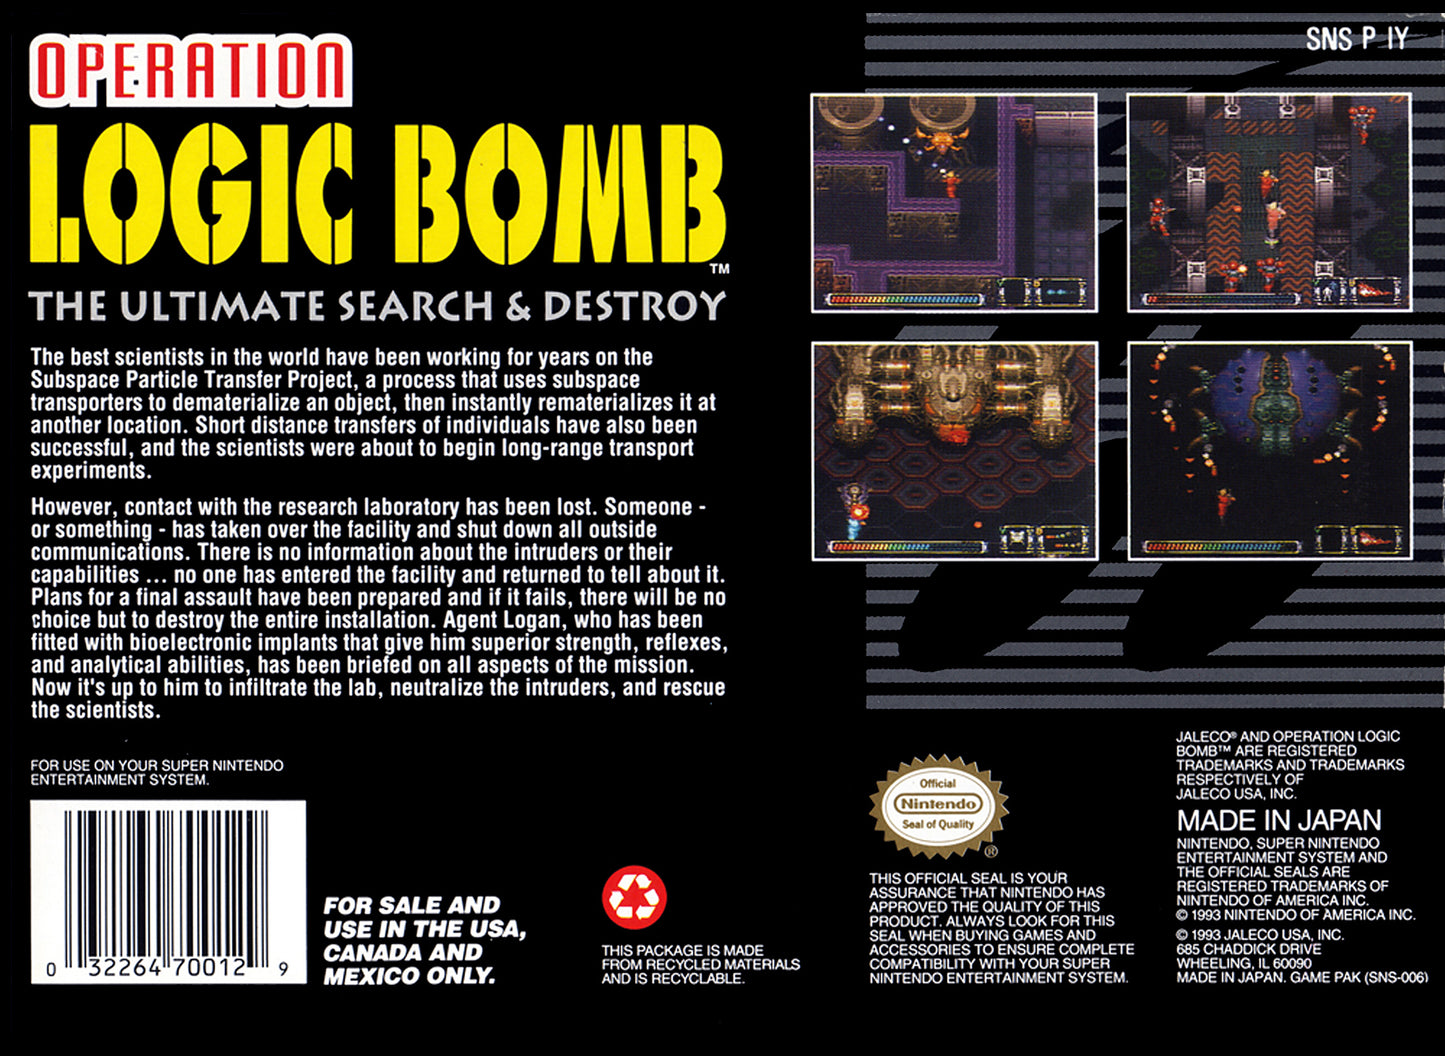 Operation Logic Bomb [NTSC]